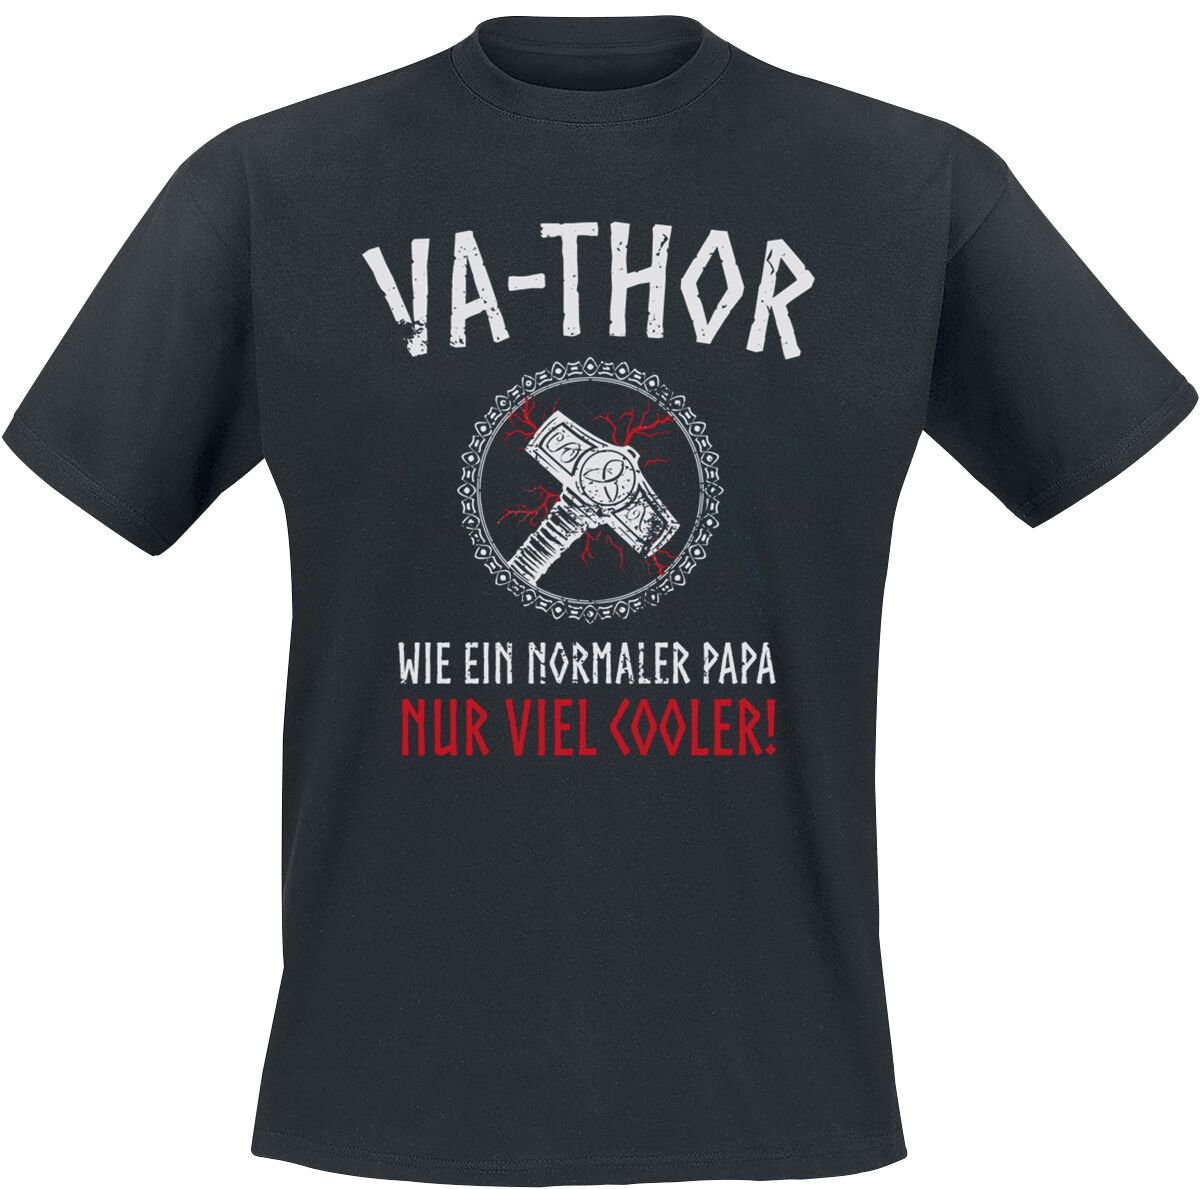 Familie & Freunde T-Shirt - Va-Thor - S bis 4XL - für Männer - Größe XXL - schwarz